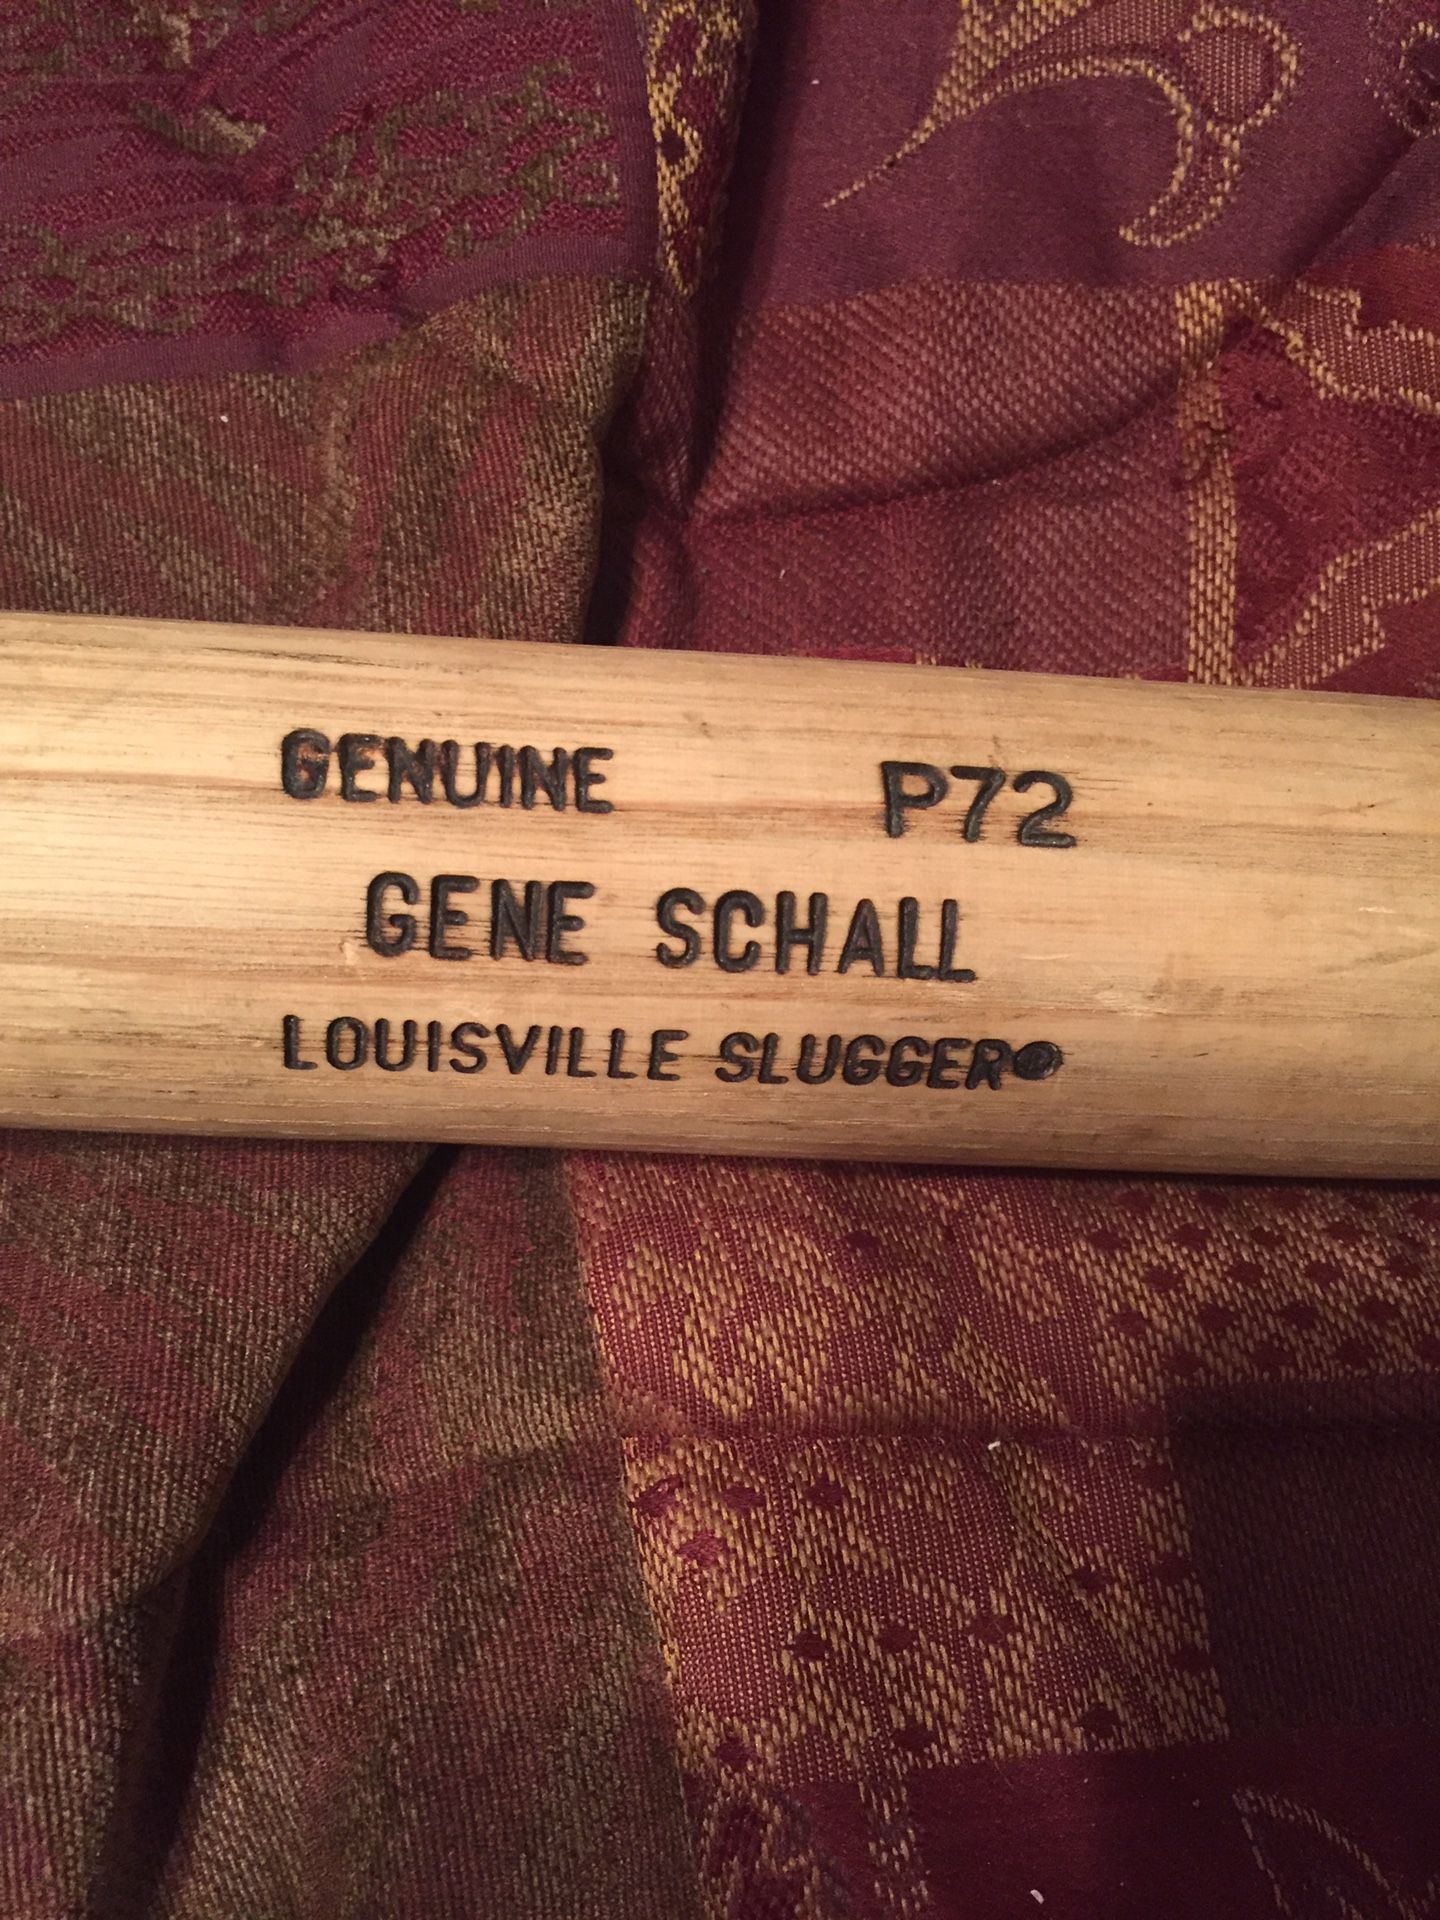 Gene Schall game bat